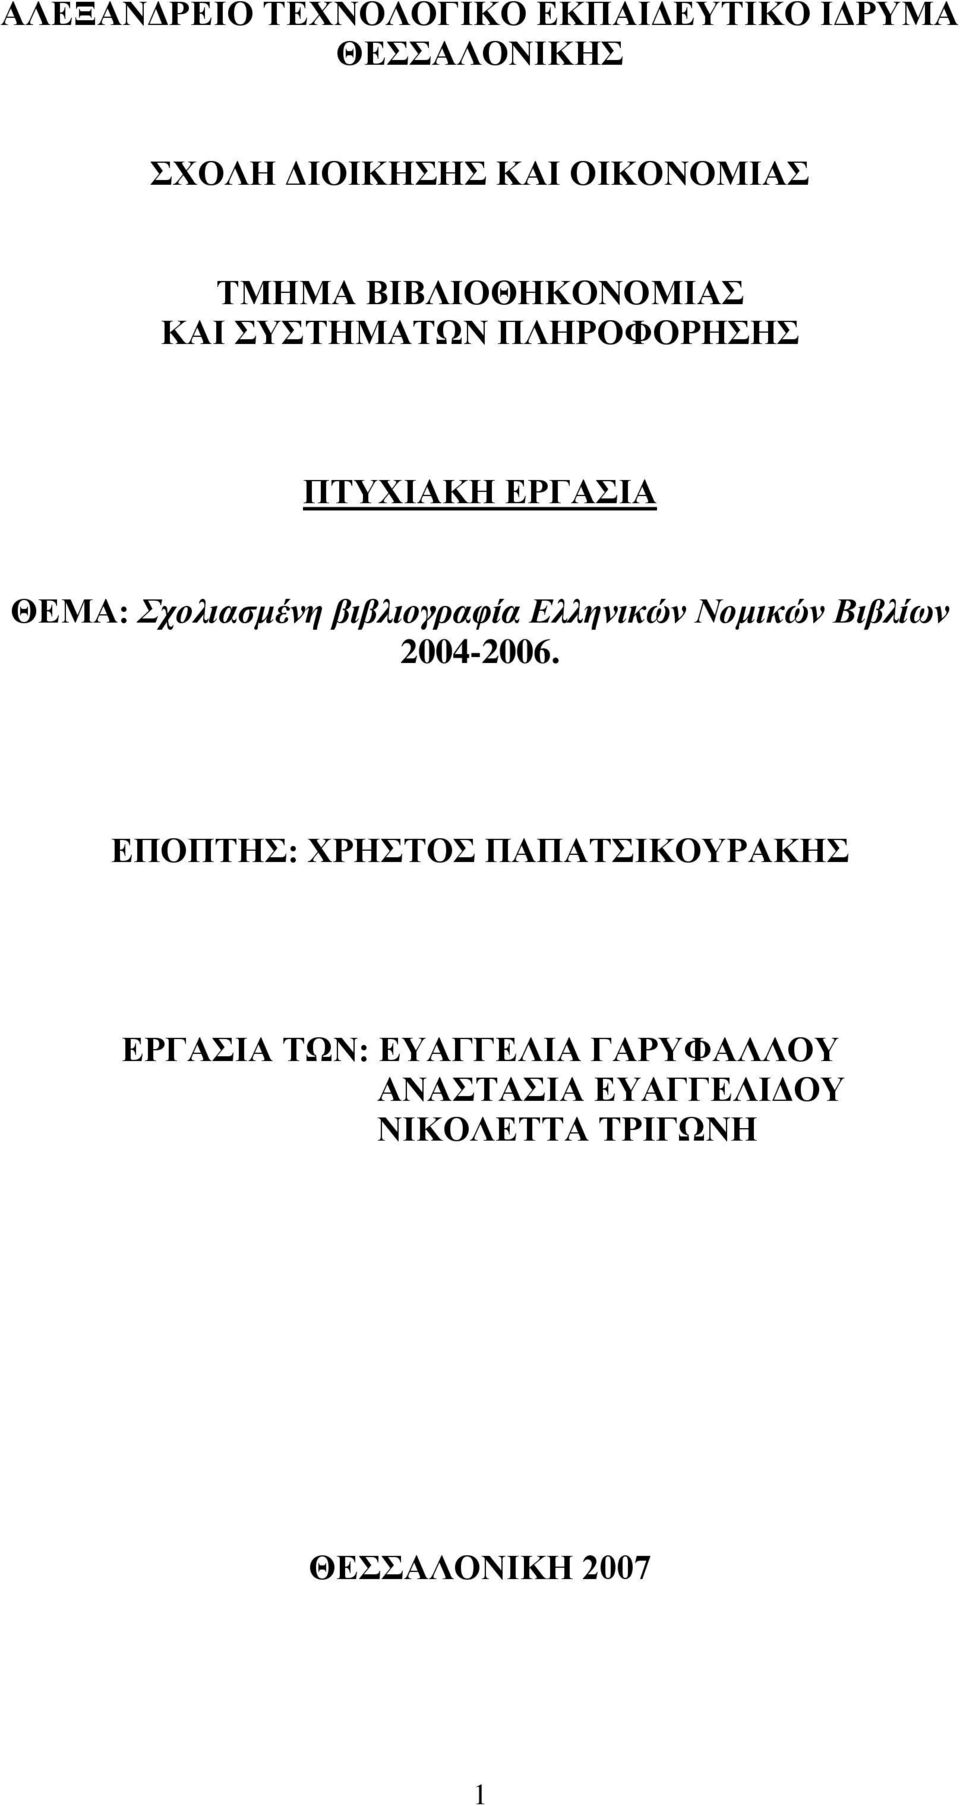 βιβλιογραφία Ελληνικών Νομικών Βιβλίων 2004-2006.